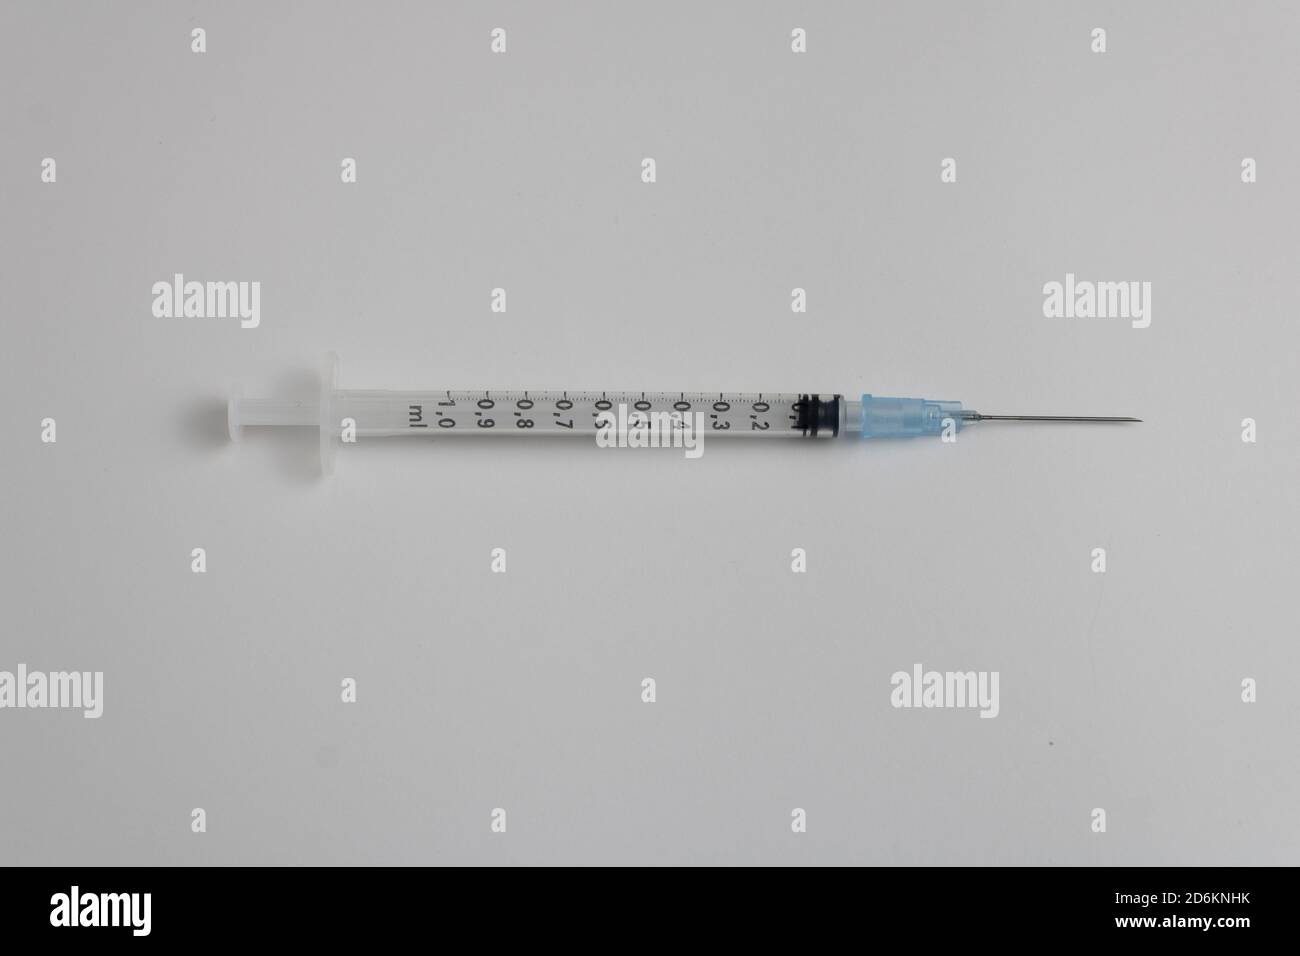 syringe with needle with blue medicine isolated on white background Stock Photo